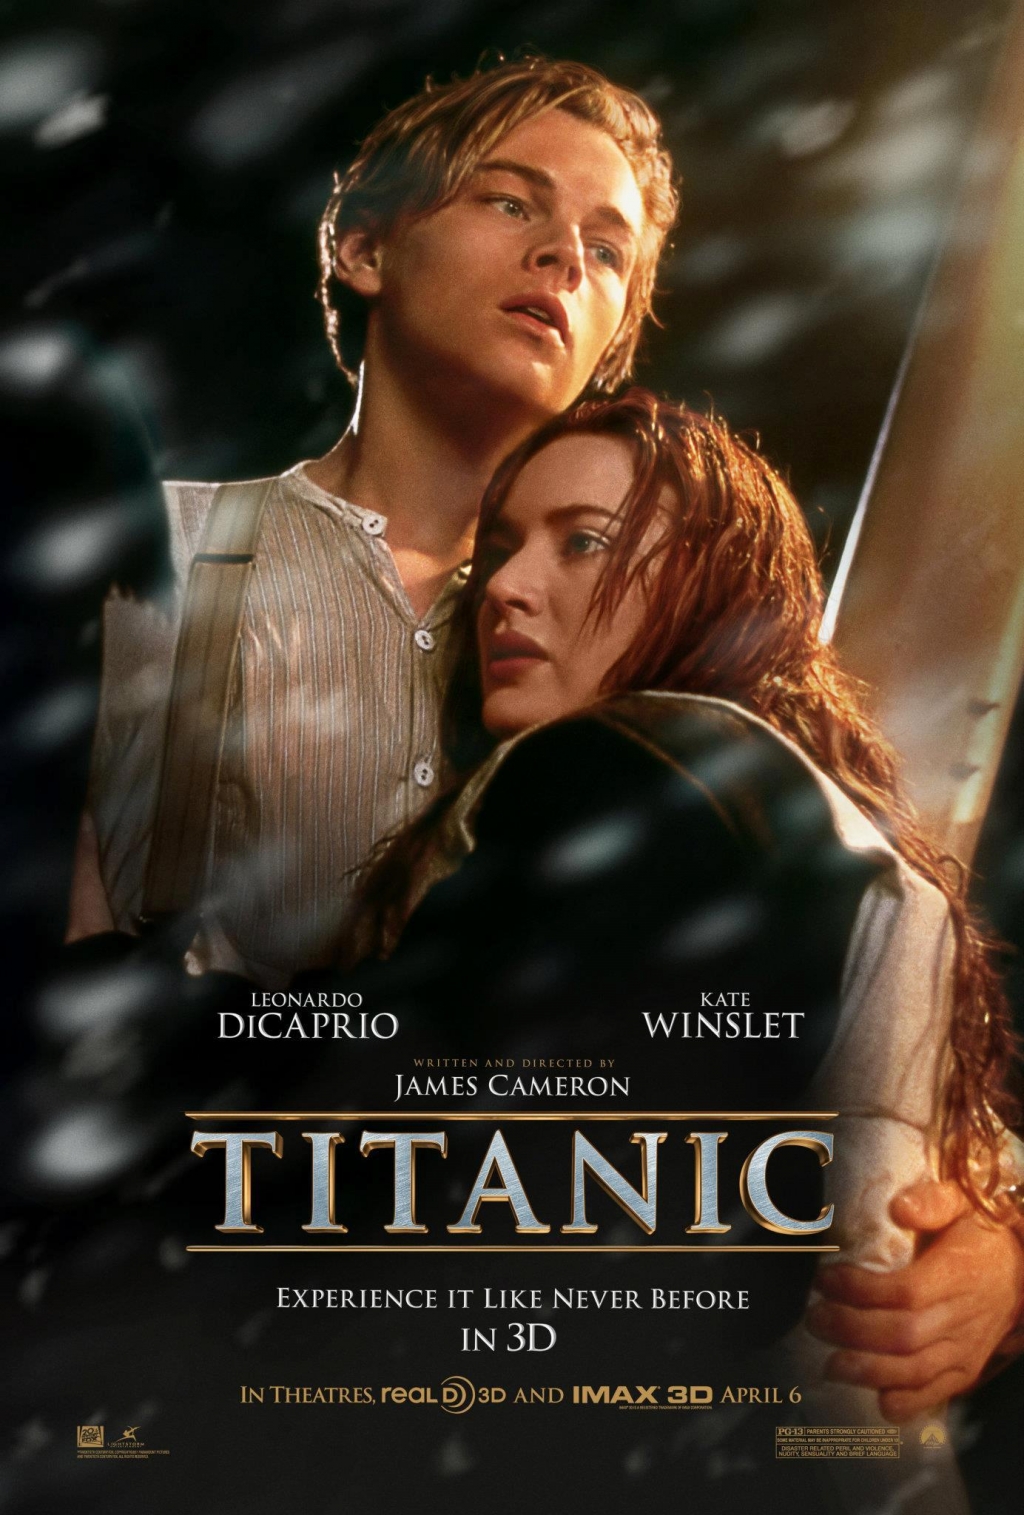 http://4.bp.blogspot.com/-kNN0PYGsieQ/T3S4hKIf0uI/AAAAAAAAC1Y/YcZ24pm4VW0/s1600/Titanic+3D+2012+film+movie+poster.jpg